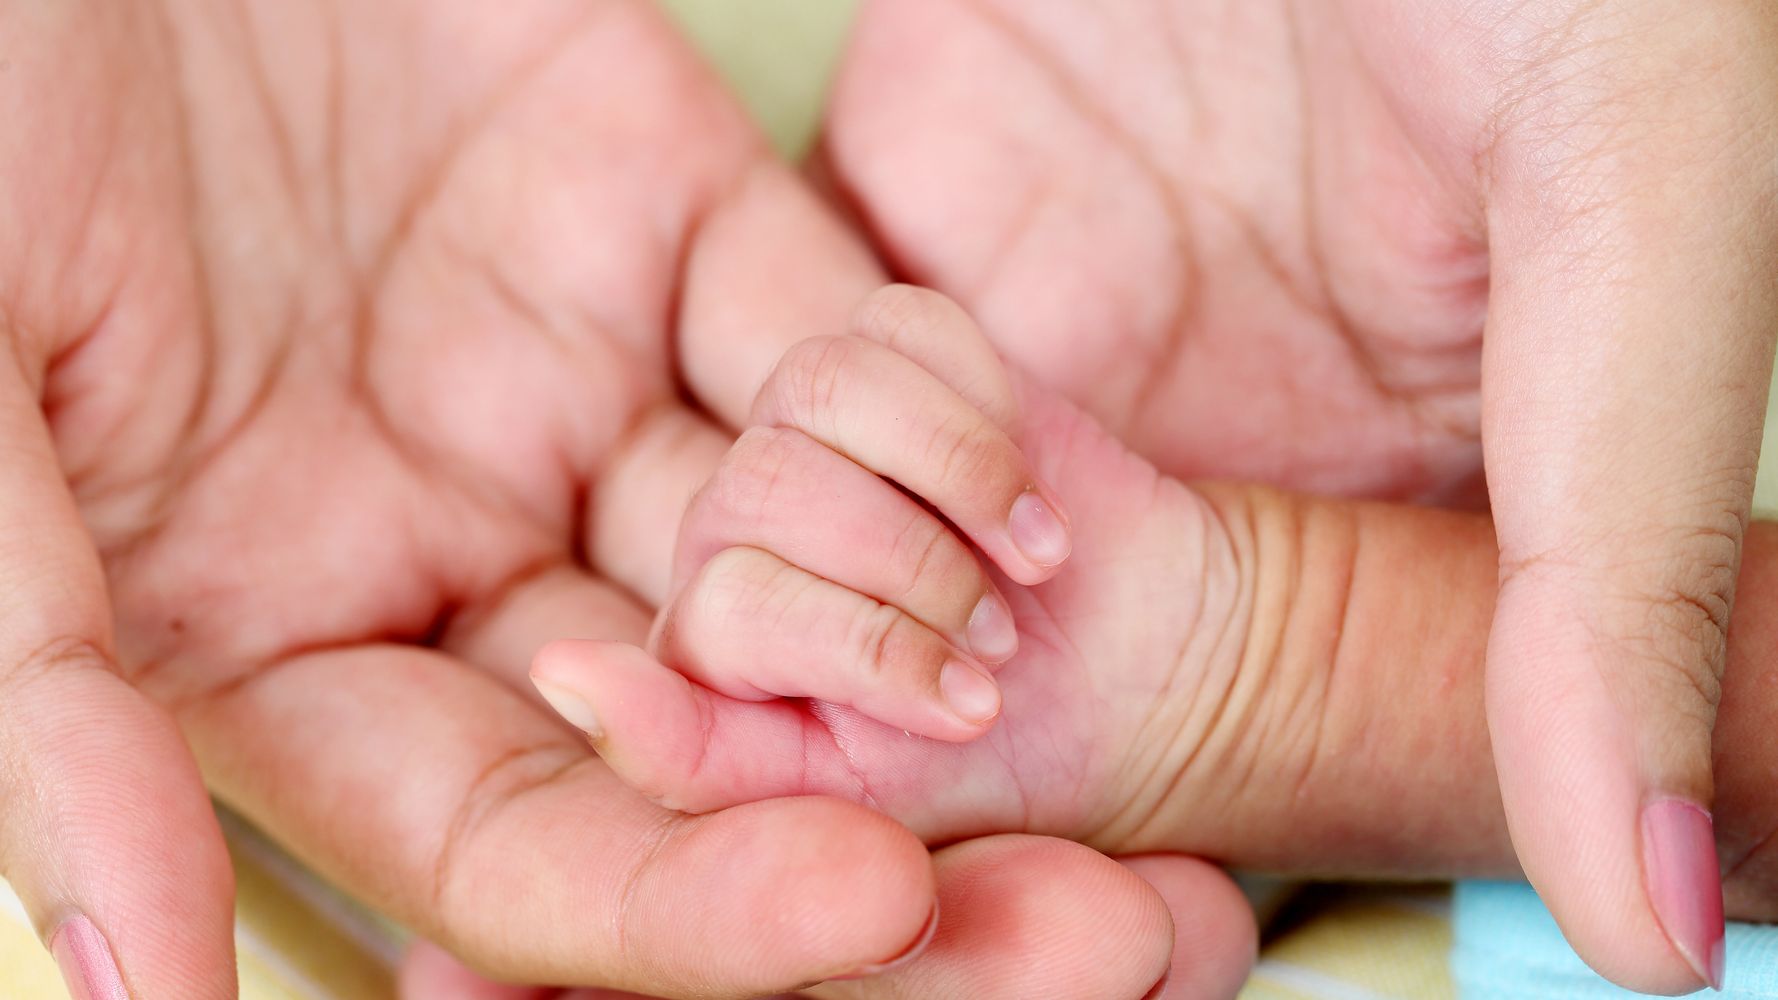 Dans L Ain 11 Nouveaux Cas De Bebes Sans Bras Identifies Le Huffington Post Life